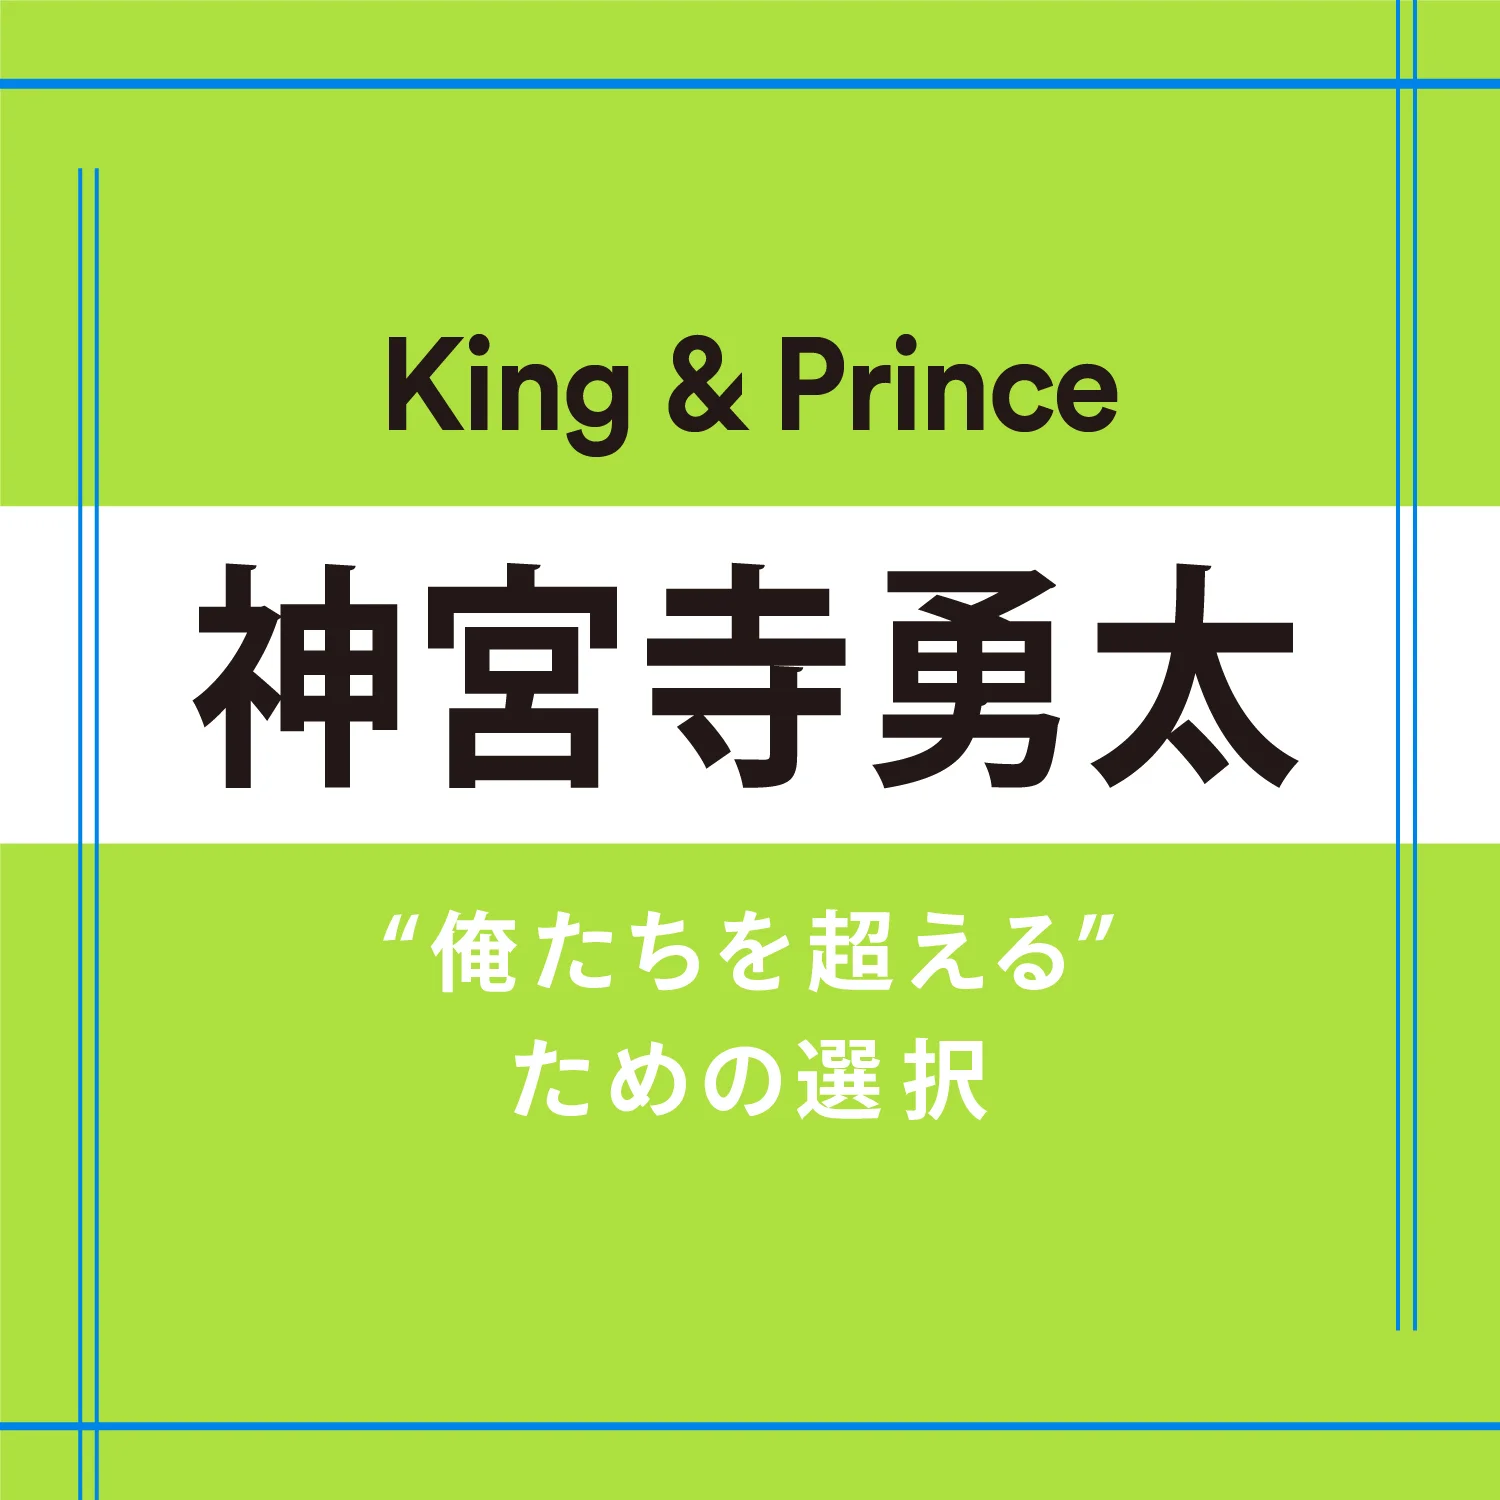 【King &amp; Prince】神宮寺勇太さん「選択を悩むのではなく、自分の選択肢を正解に導くように努力する」